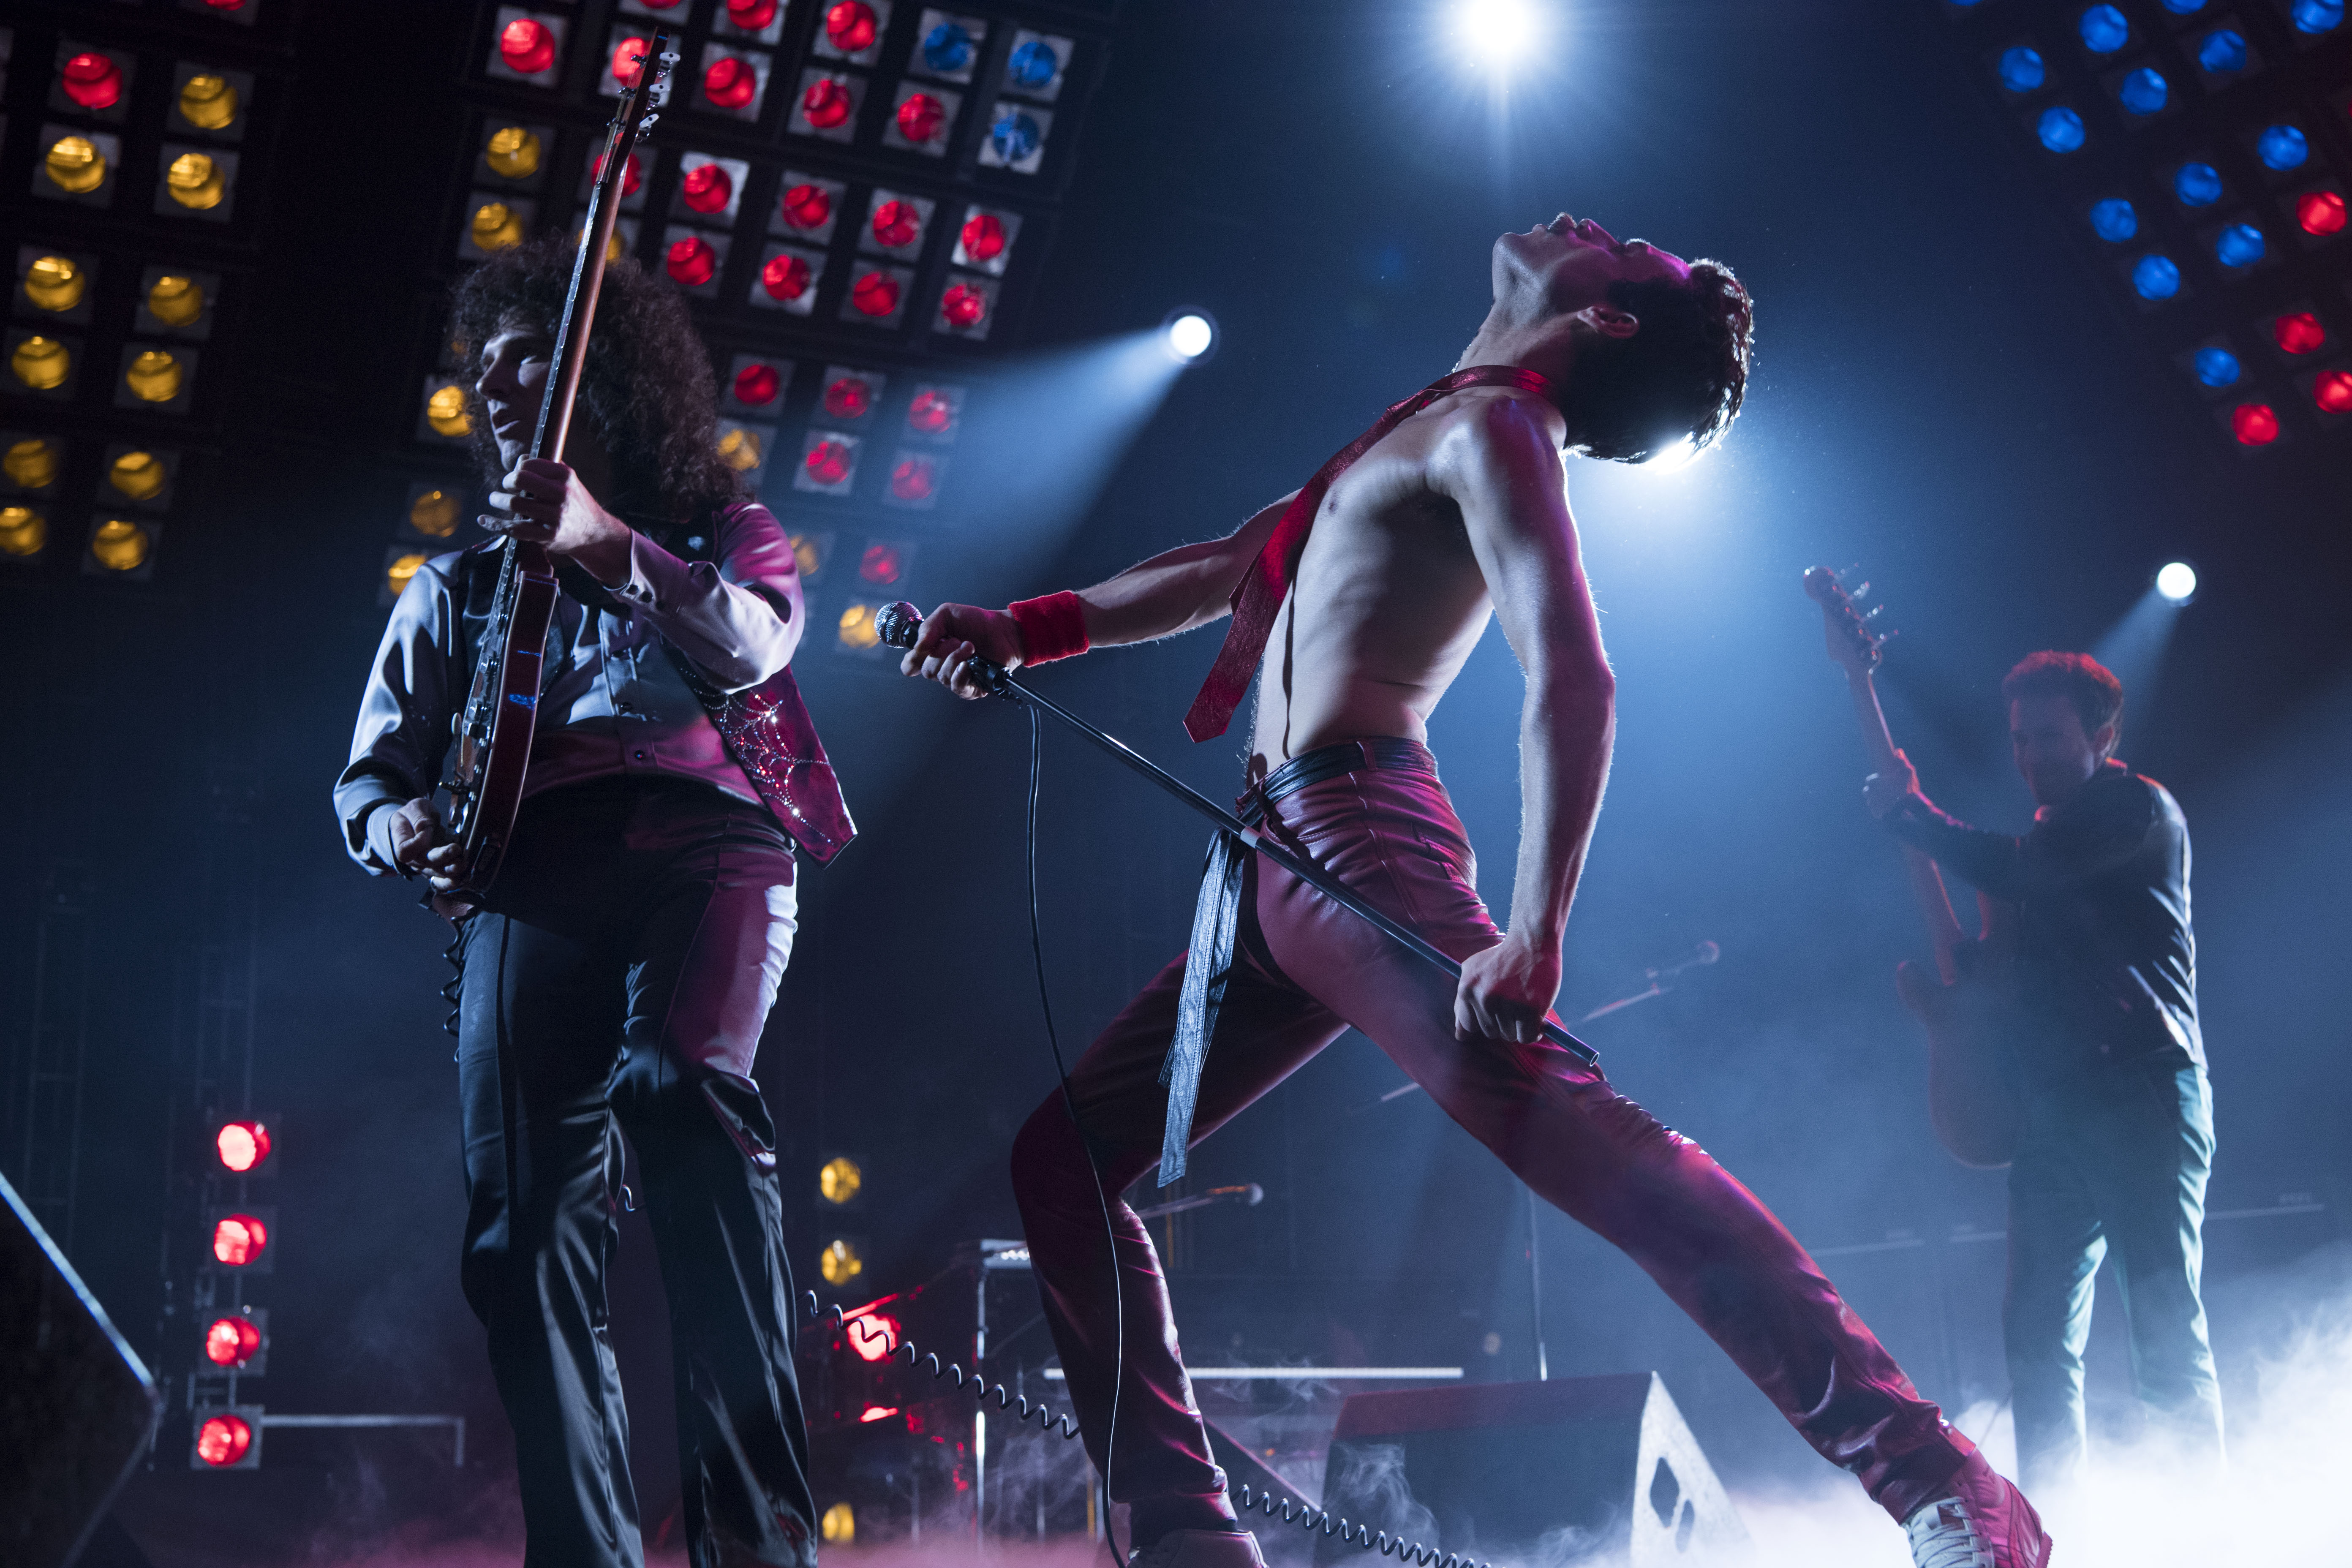 Arvio: Bohemian Rhapsody on hämmentävä fiilistelyelokuva ja maineenhallintayritys Queenin elossa olevilta jäseniltä